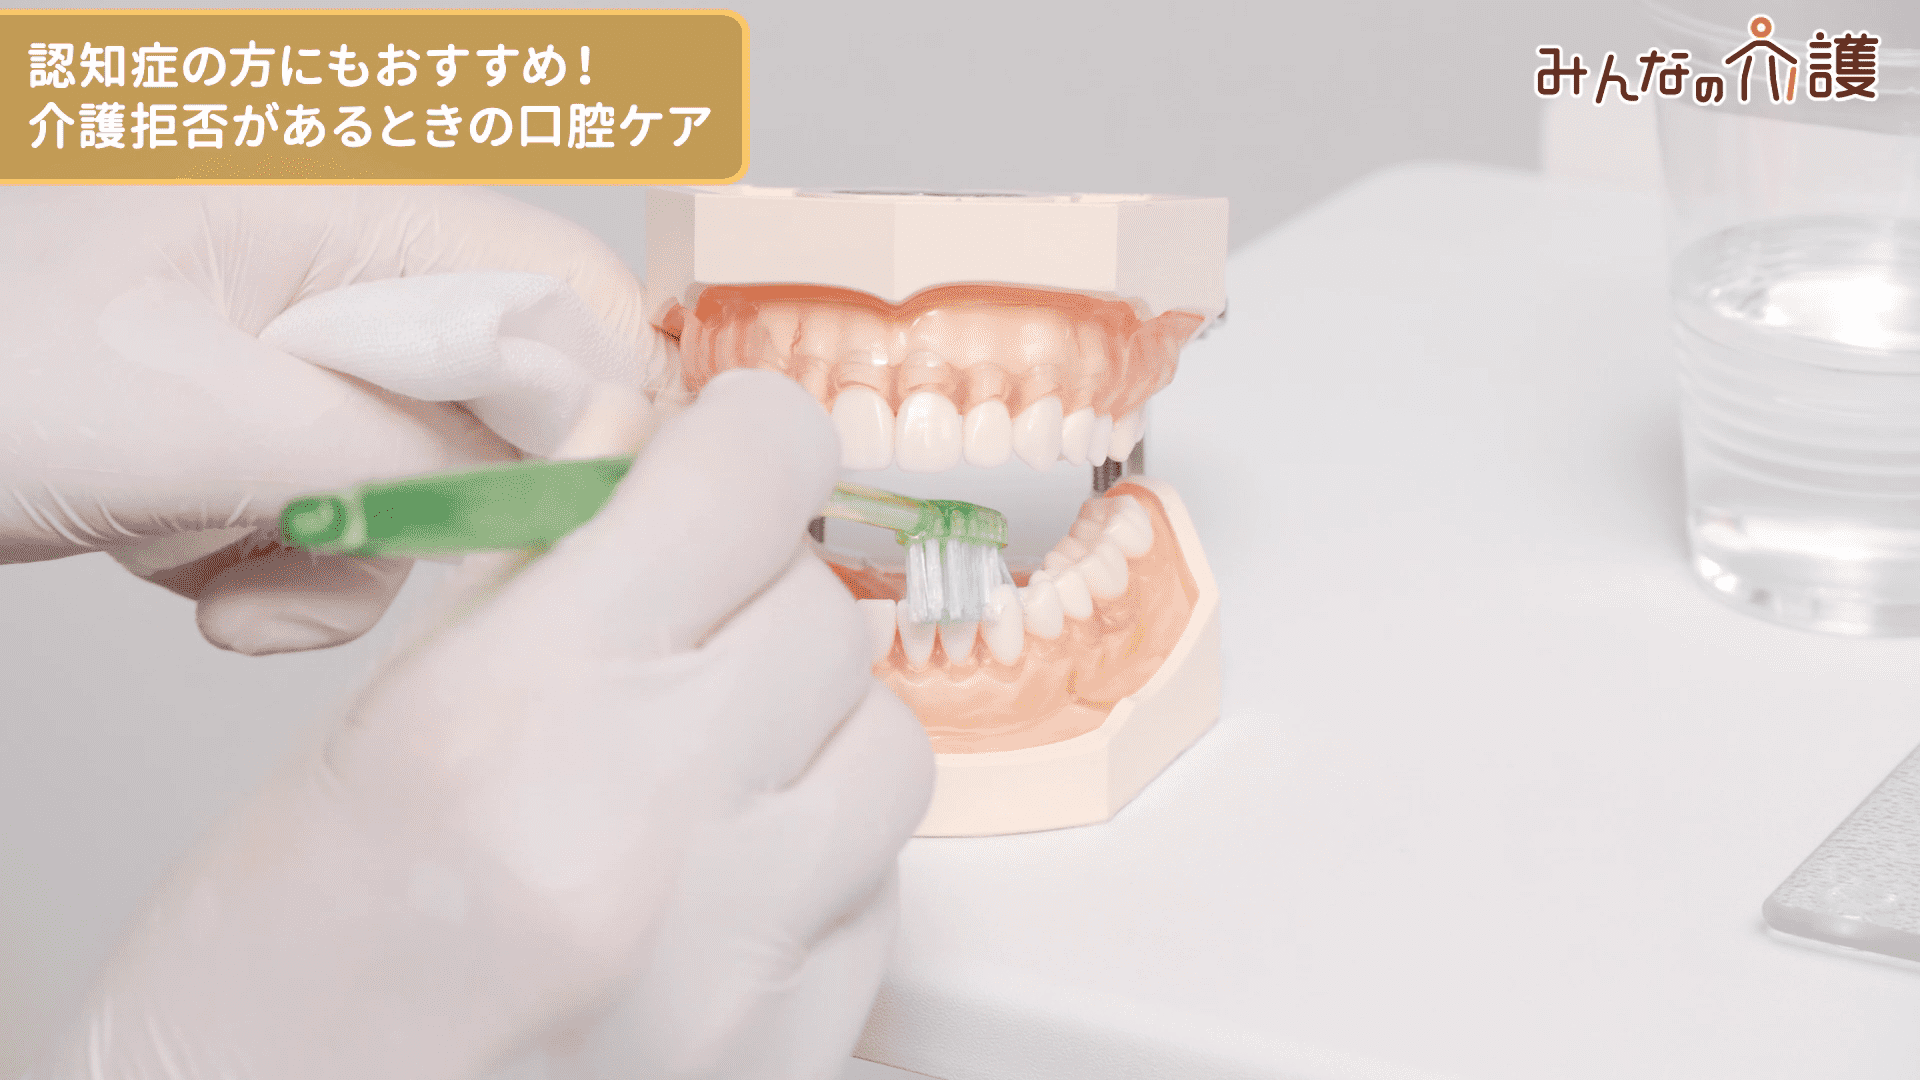 下の歯の裏側を磨いている様子